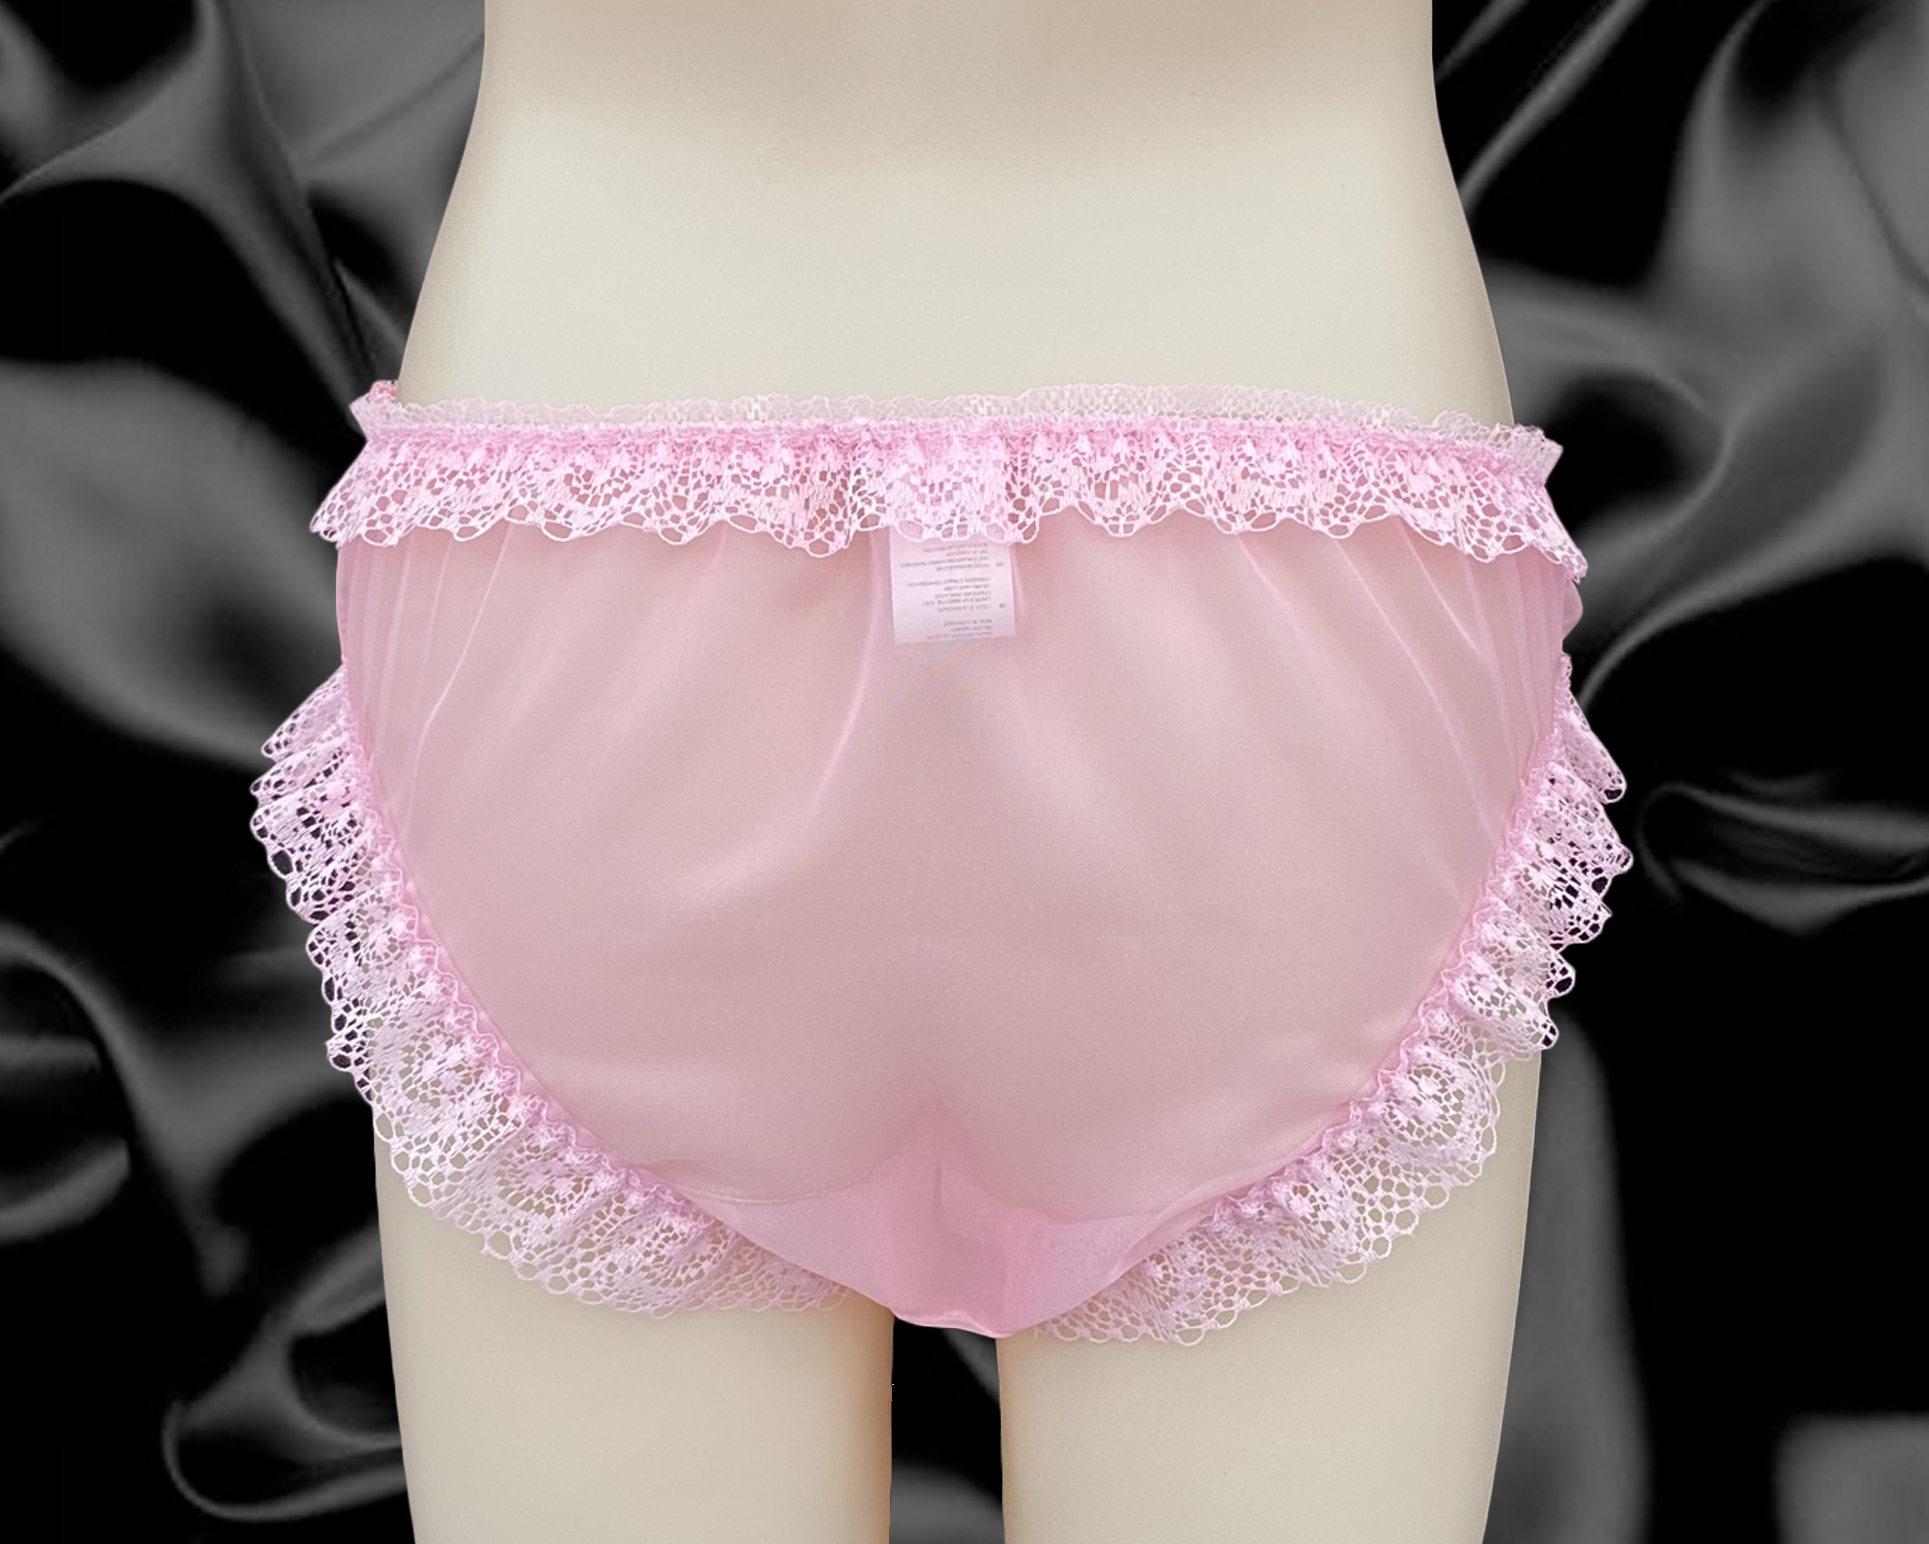 Pink nylon panties